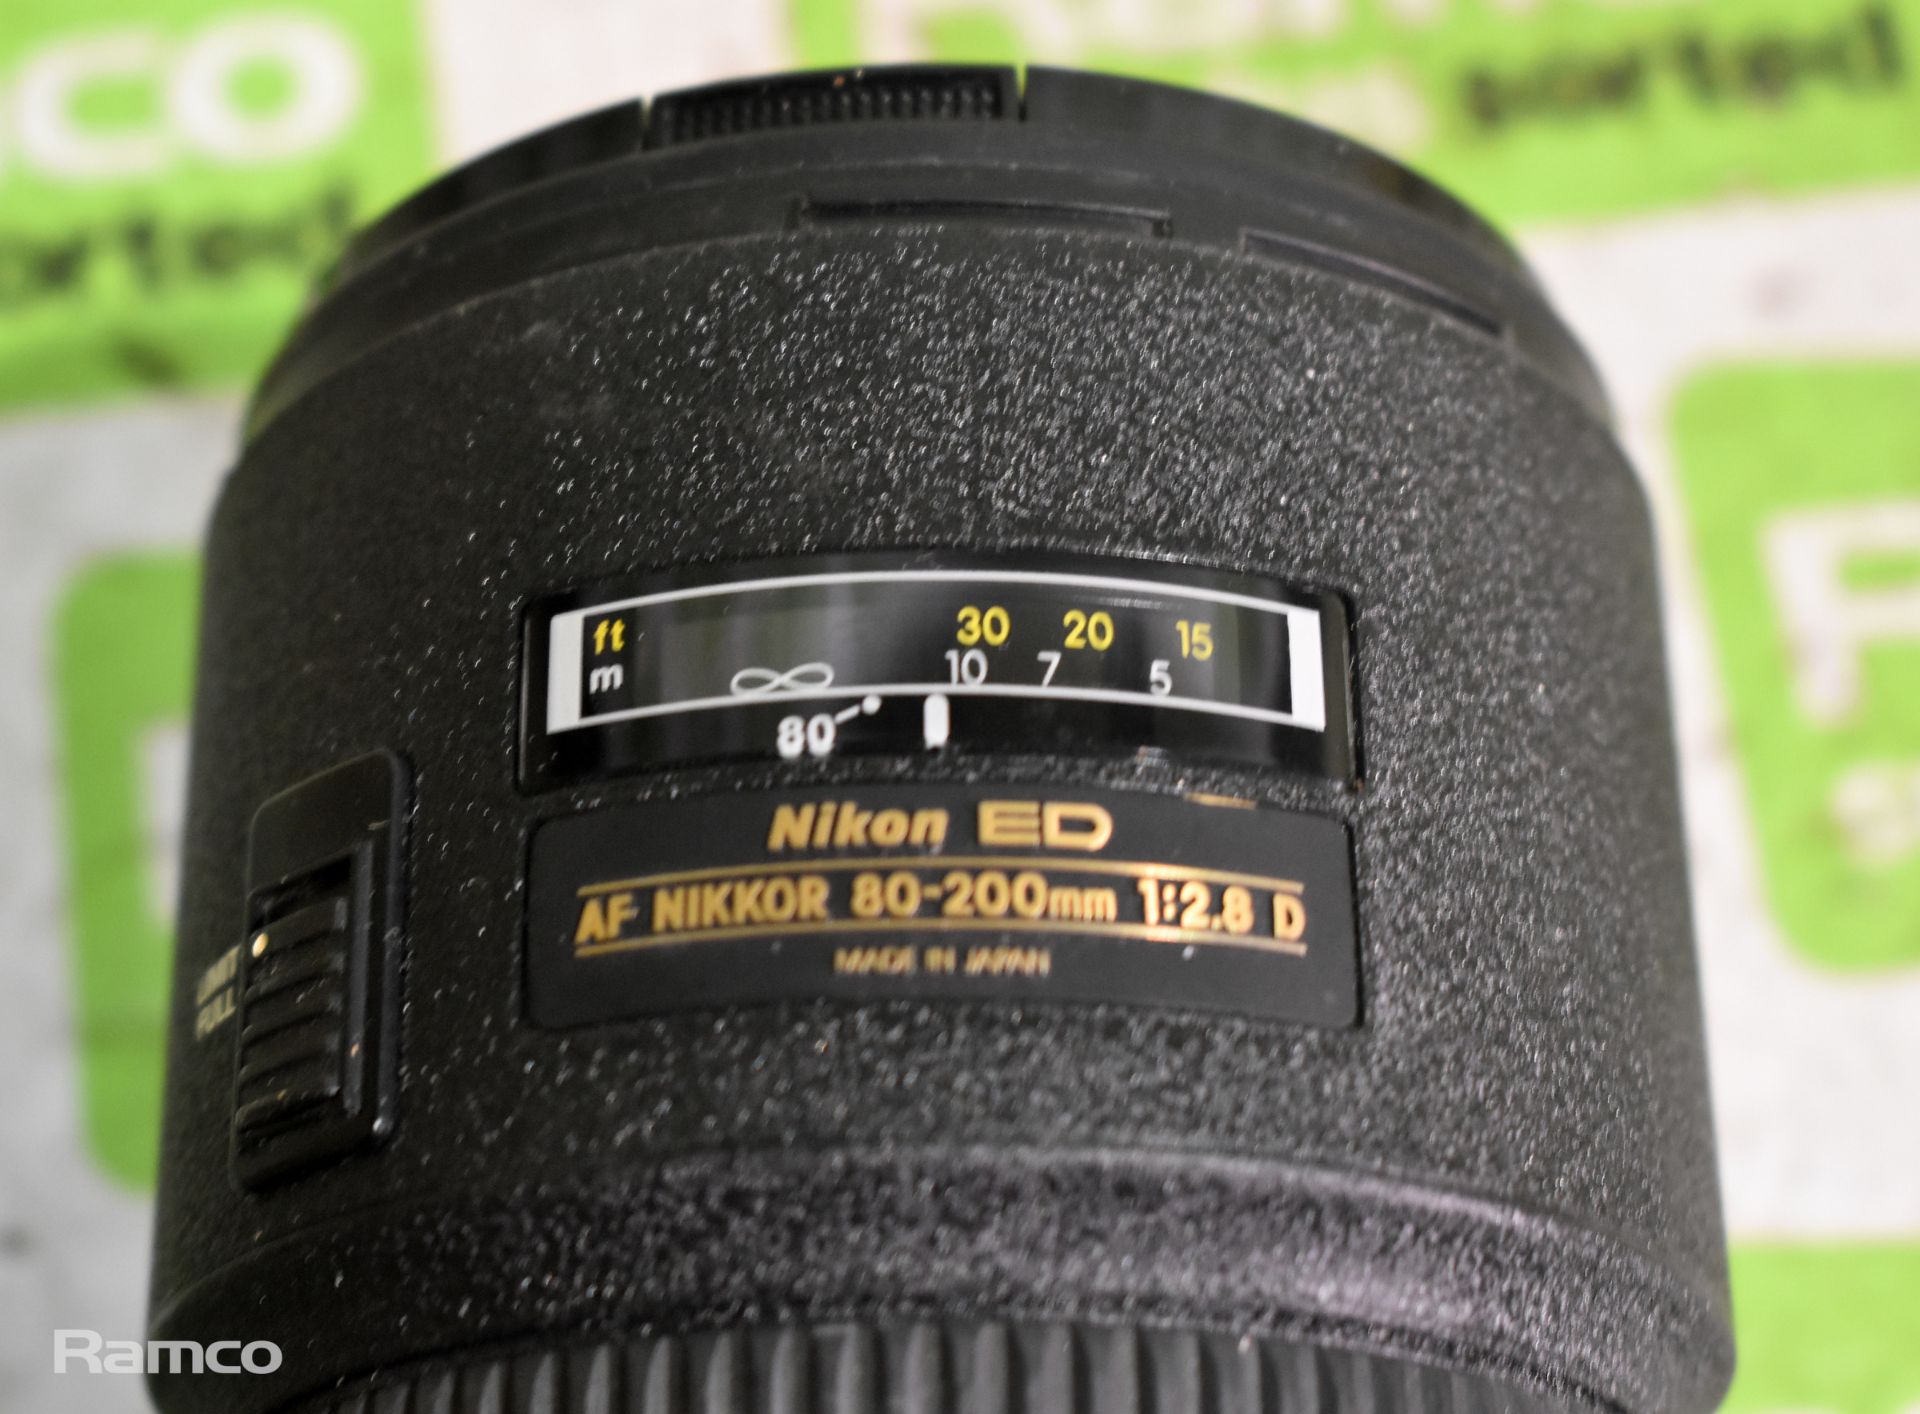 Nikon ED AF Nikkor 80-200mm 1:2.8 D camera zoom lens - Image 2 of 8